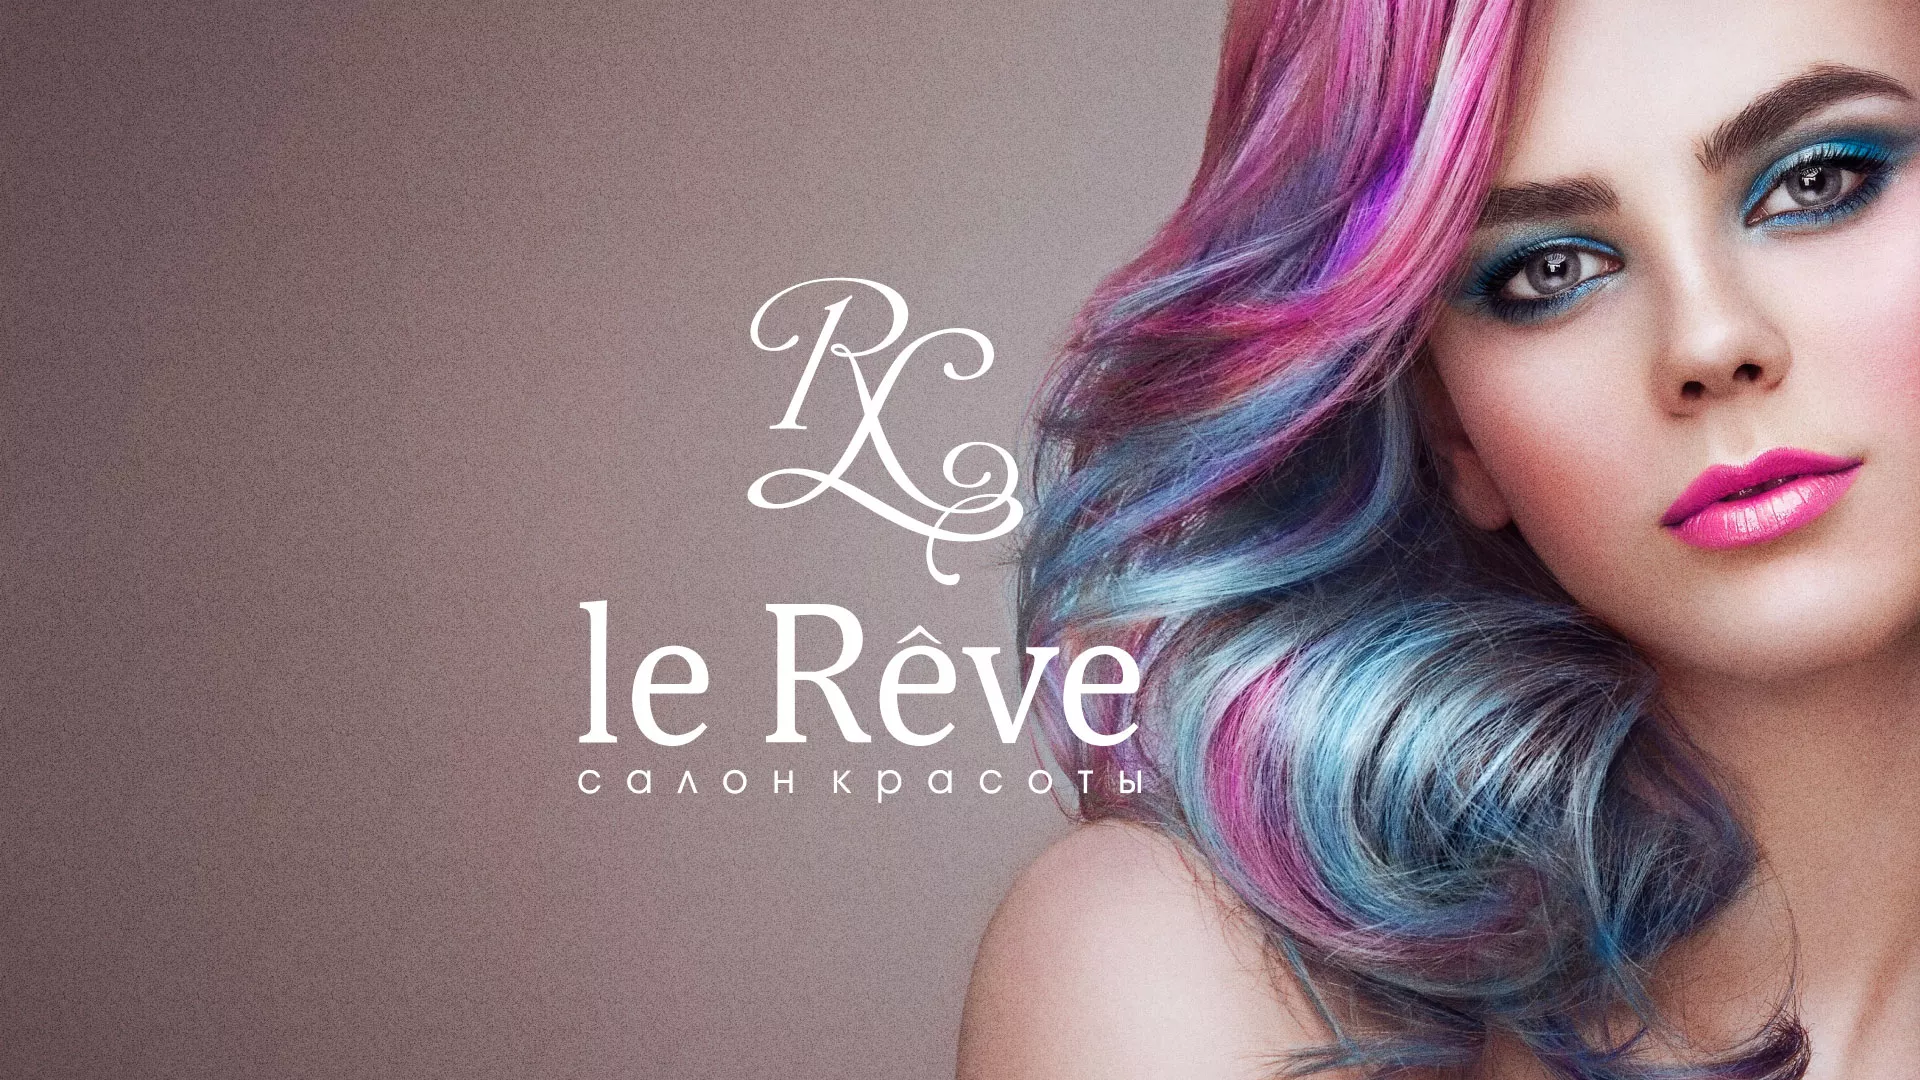 Создание сайта для салона красоты «Le Reve» в Калтане